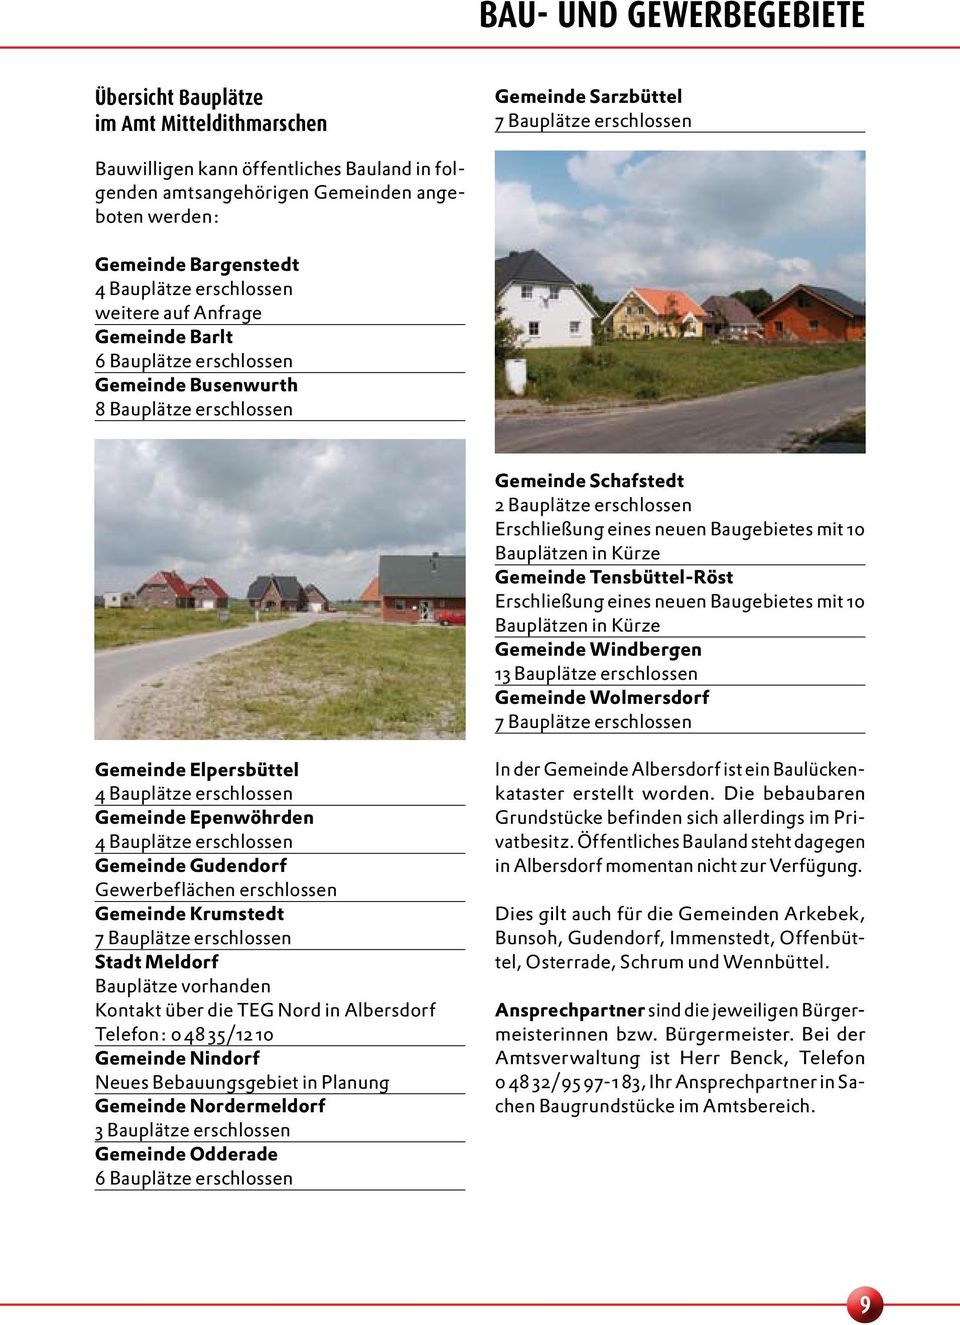 erschlossen Erschließung eines neuen Baugebietes mit 10 Bauplätzen in Kürze Gemeinde Tensbüttel-Röst Erschließung eines neuen Baugebietes mit 10 Bauplätzen in Kürze Gemeinde Windbergen 13 Bauplätze